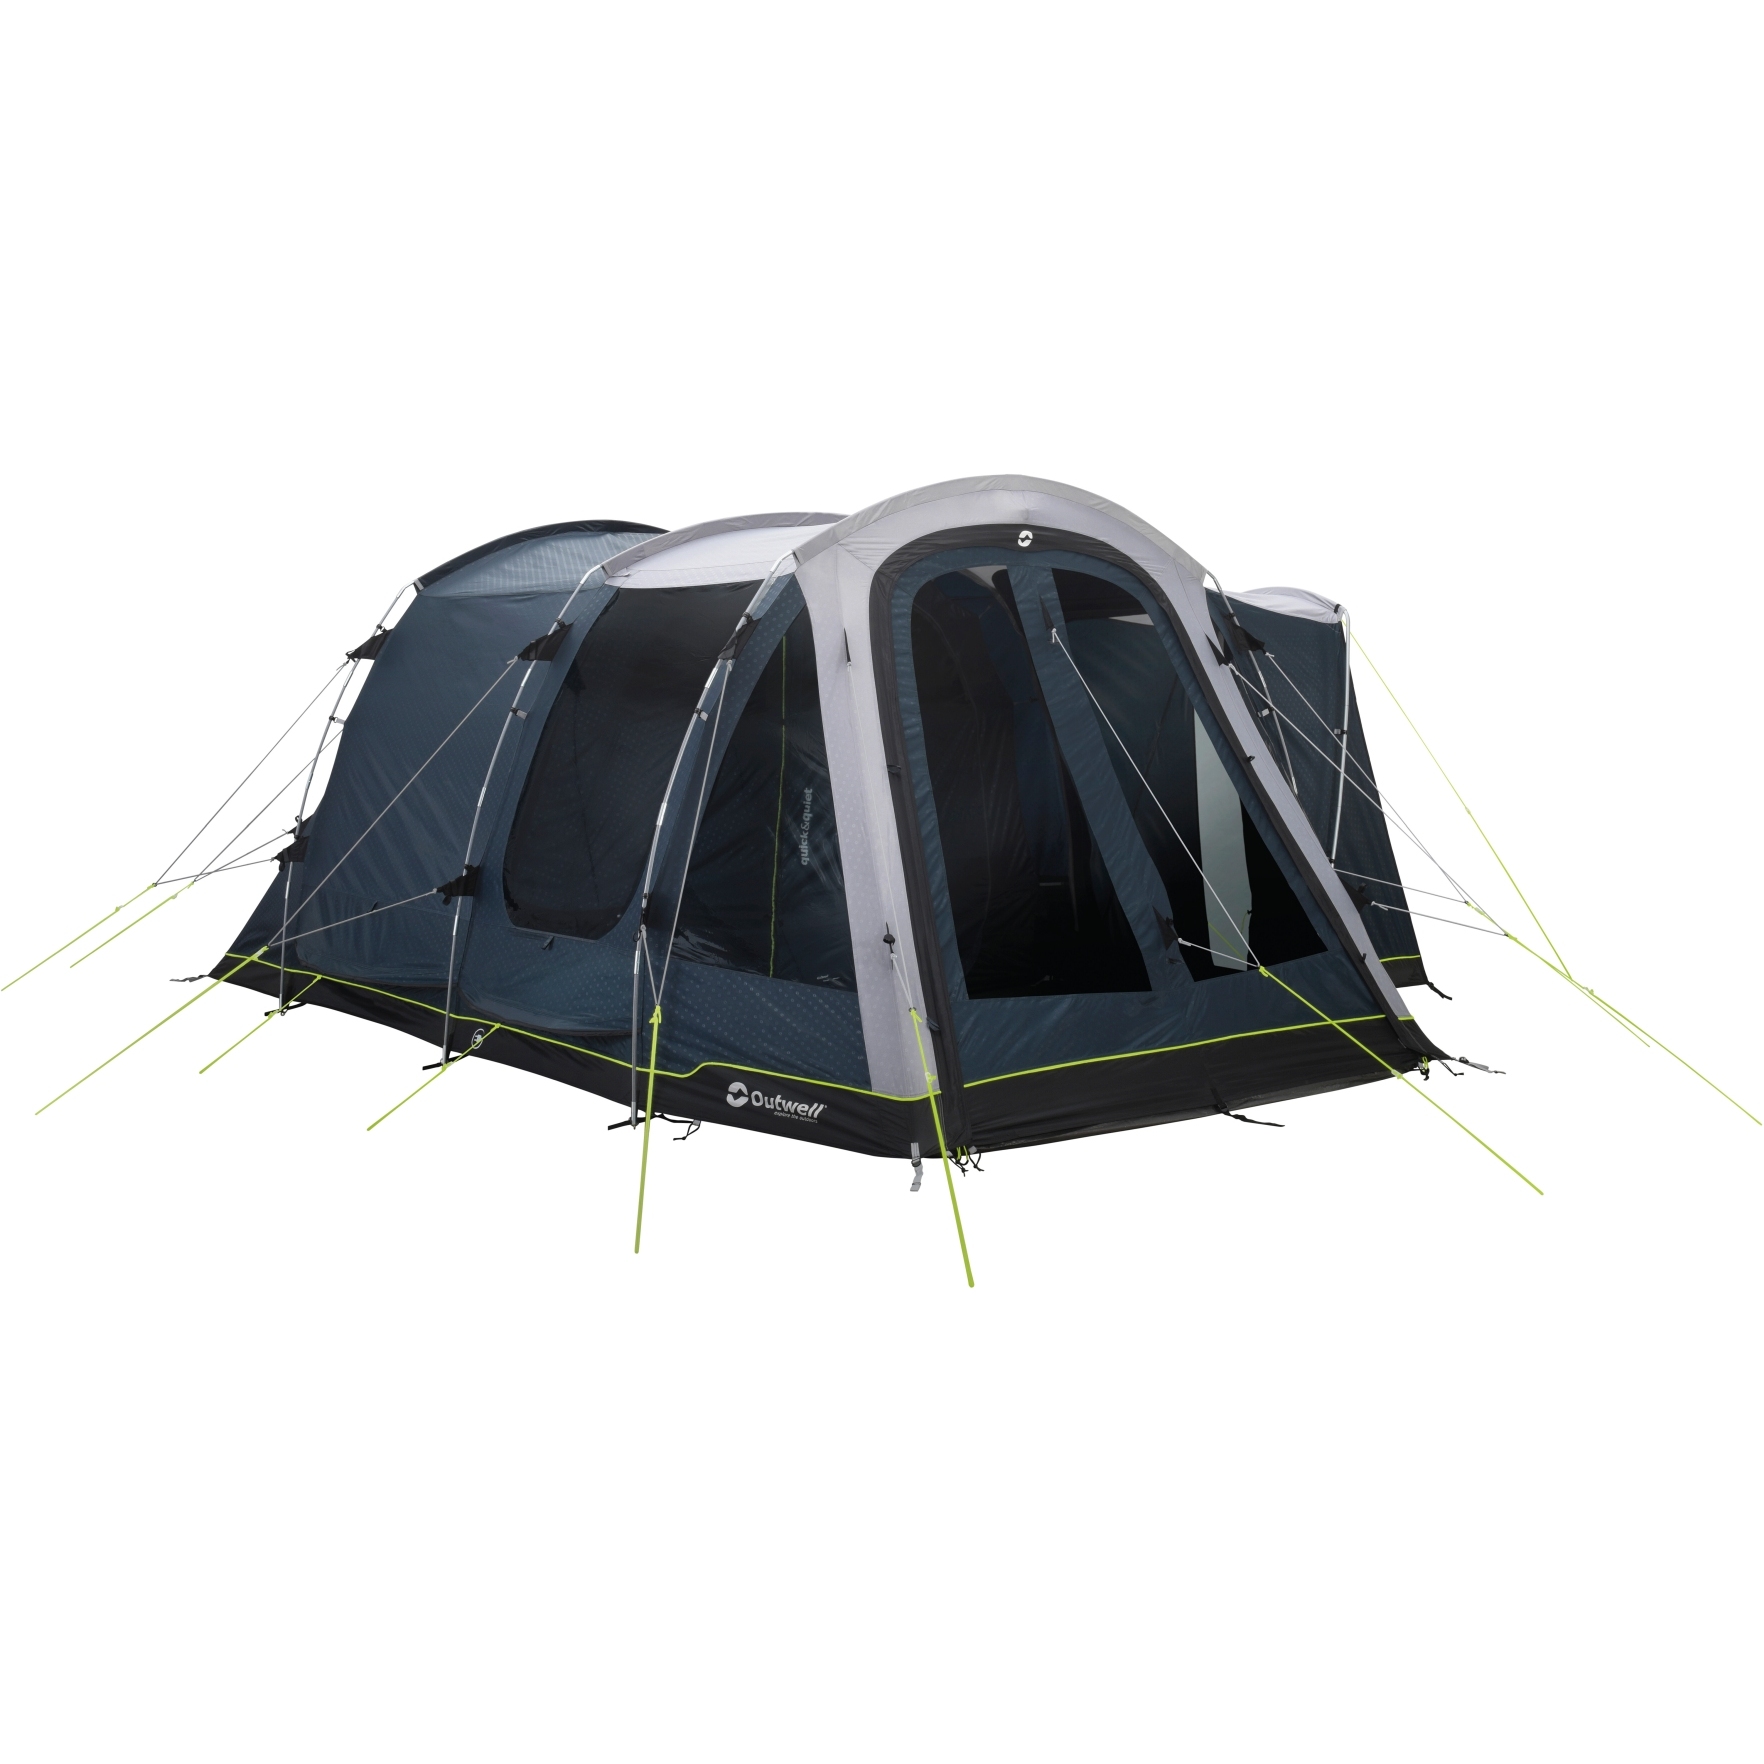 Productfoto van Outwell Nevada 4PE Tent - Blauw